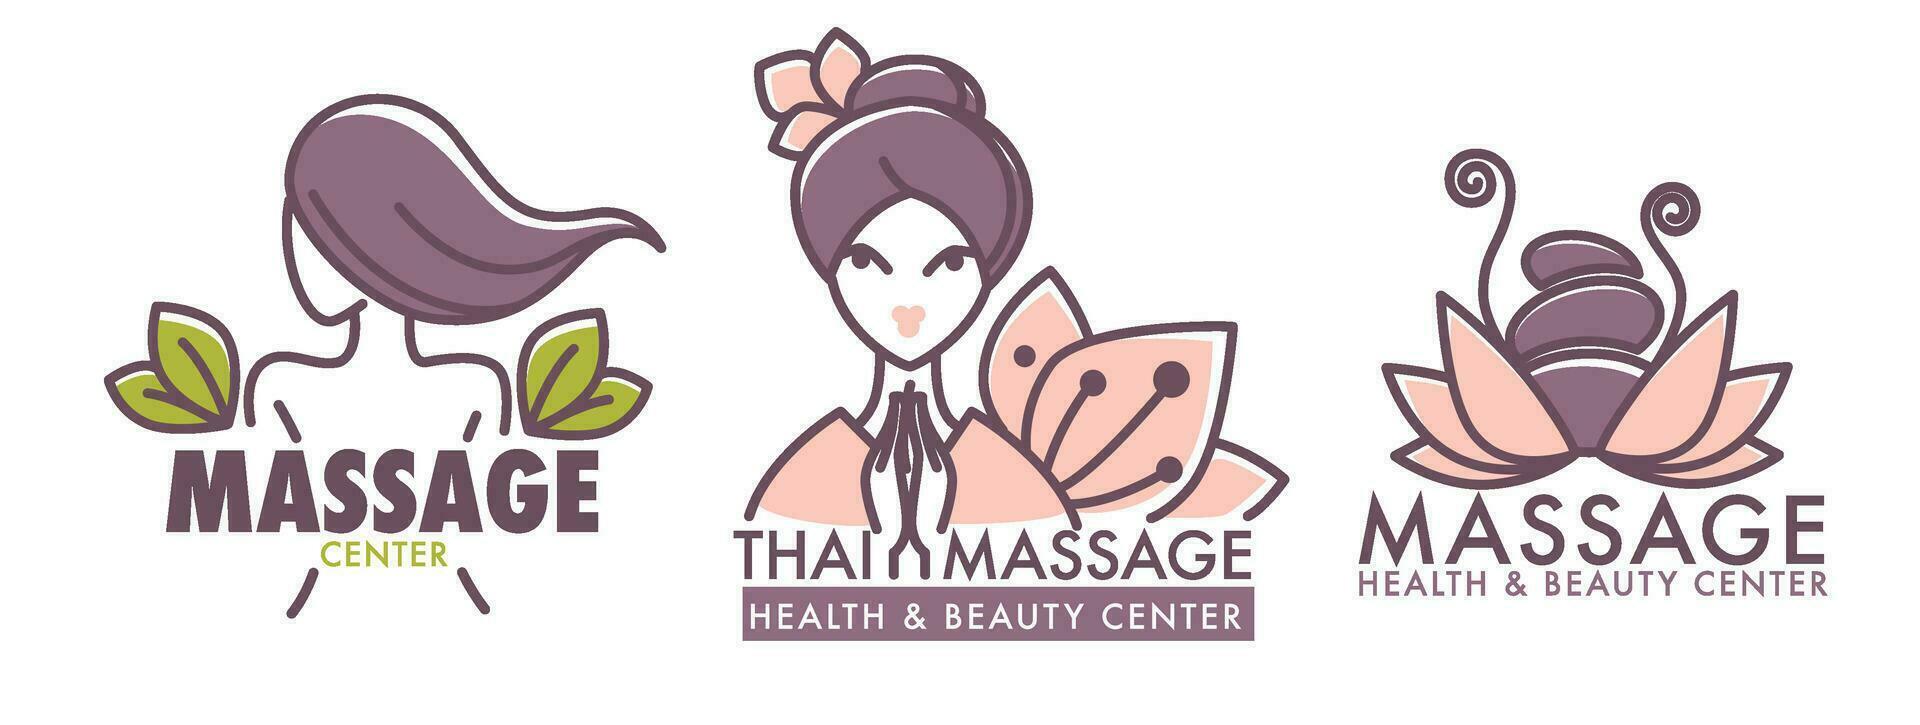 massage hälsa och skönhet Centrum, thai kultur vektor